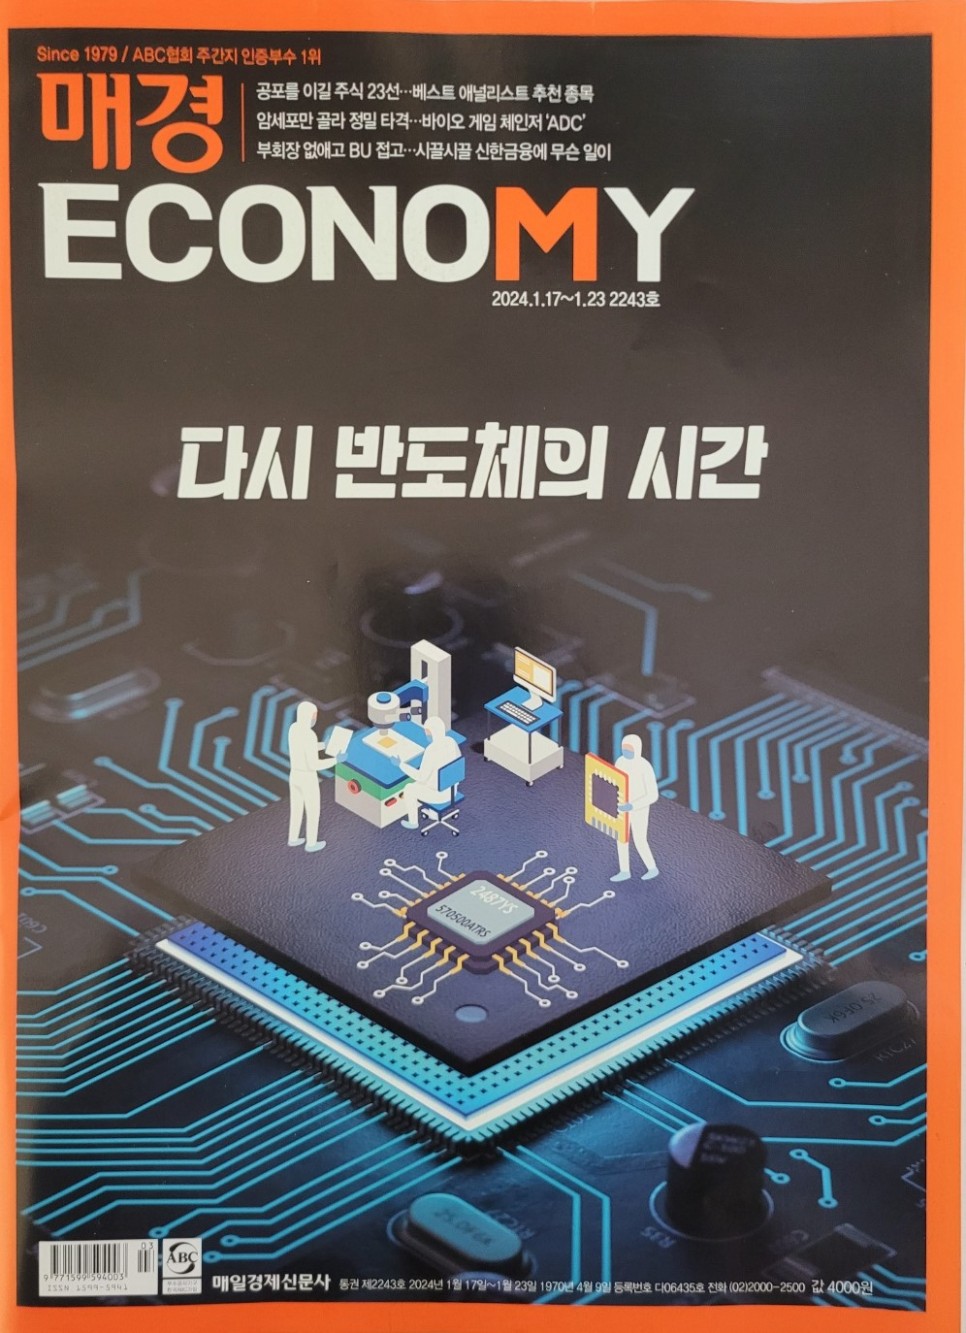 매경이코노미 선정 베스트 애널리스트 주식 투자 추천 종목 - 24.1월